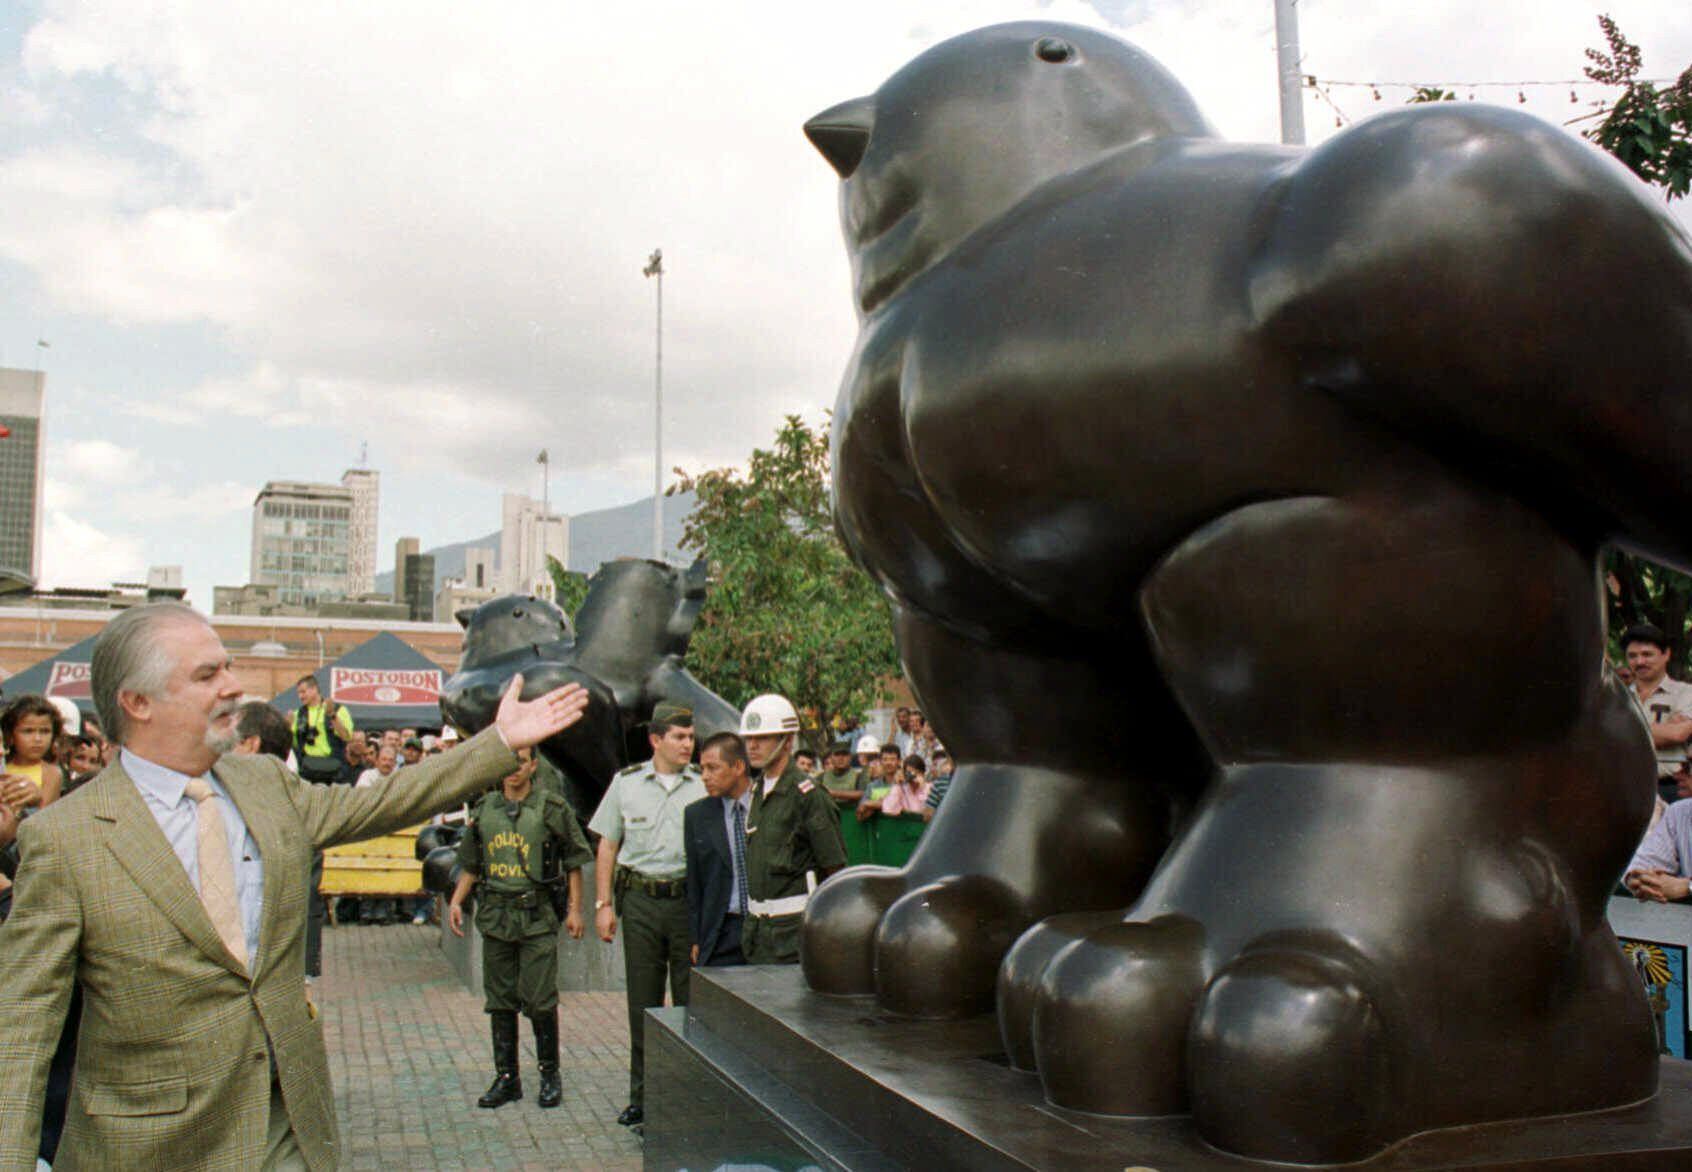 El 10 de junio de 1995, la explosión de una bomba en el parque San Antonio de Medellin se cobró la vida de 26 personas y desturyó la escultura titulada 'El pájaro' de Fernando Botero. Los restos de esta obra quedaron como un monumento desfigurado, y al lado, el artista hizo otra paloma como homenaje a la paz. Así sigue hoy en día. La guerra y la paz de Colombia a través de su artista más universal. En la imagen, Botero presenta su segunda paloma, junto a la que fue destruída por la bomba, el 5 de enero de 2000. 